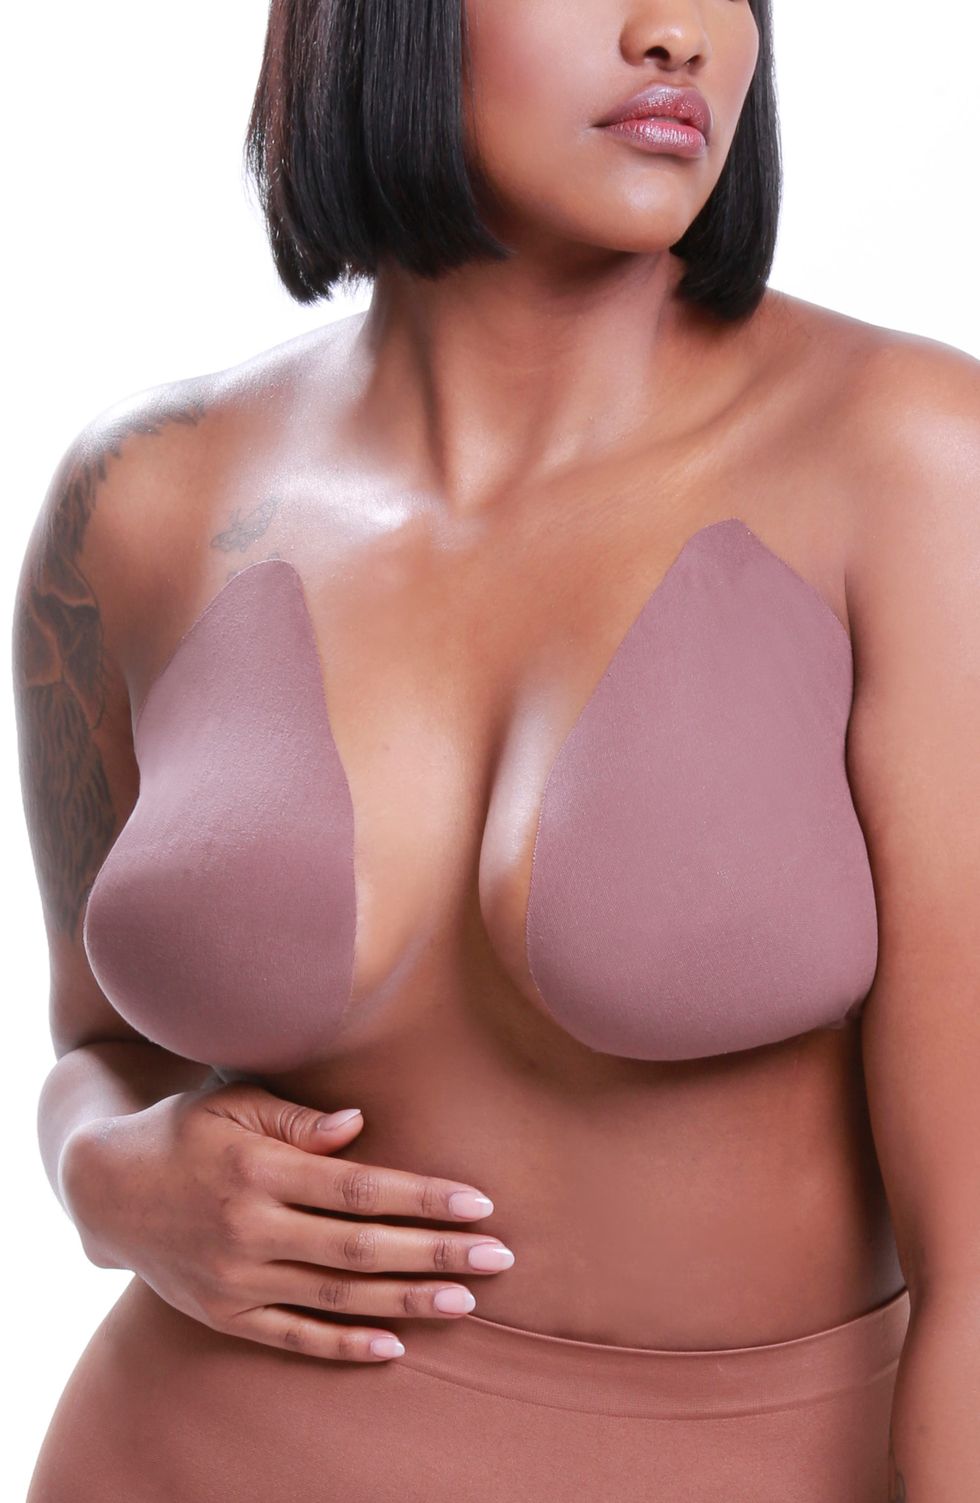 Nippies Breast Lift Tape